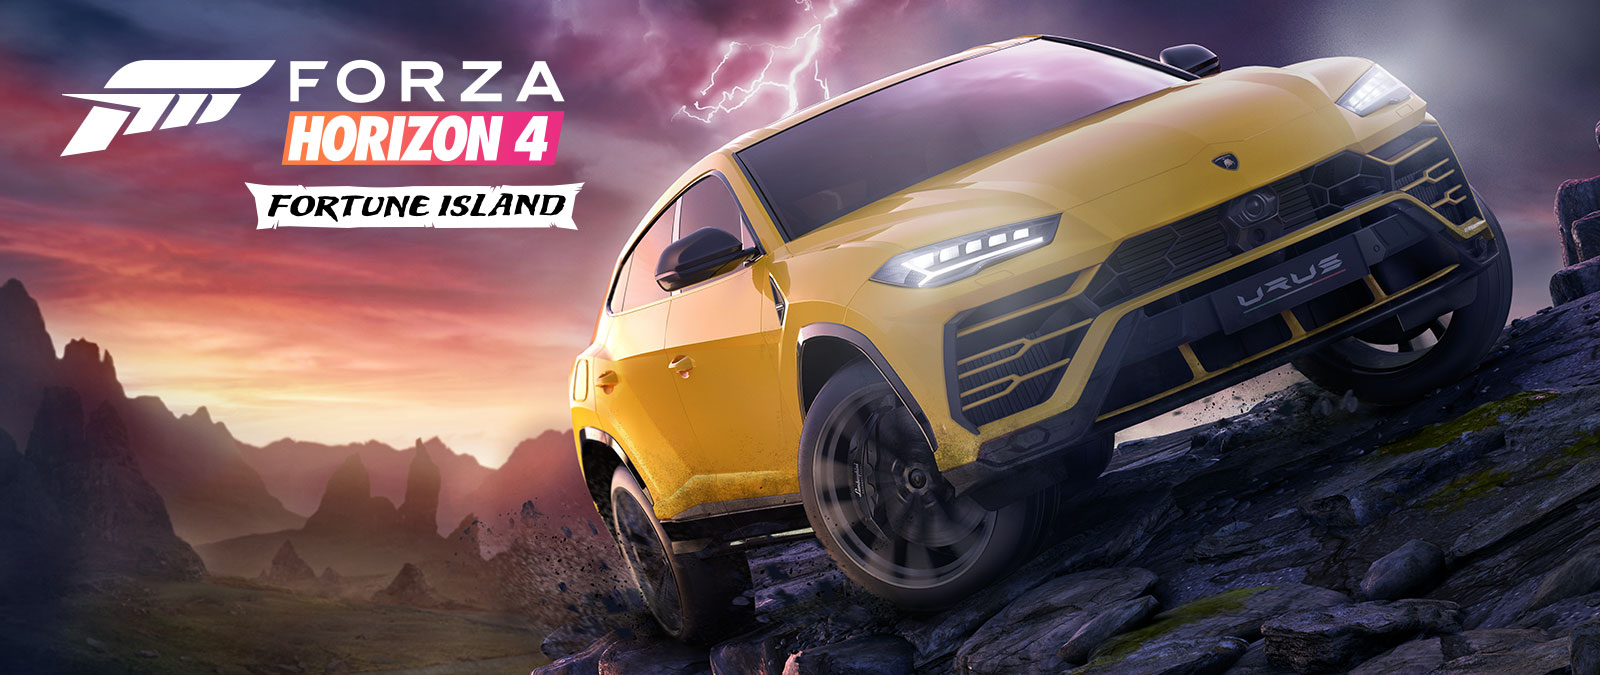 Forza Horizon 4 Fortune Island, un Lamborghini Urus amarillo circula por un terreno traicionero con un relámpago de fondo